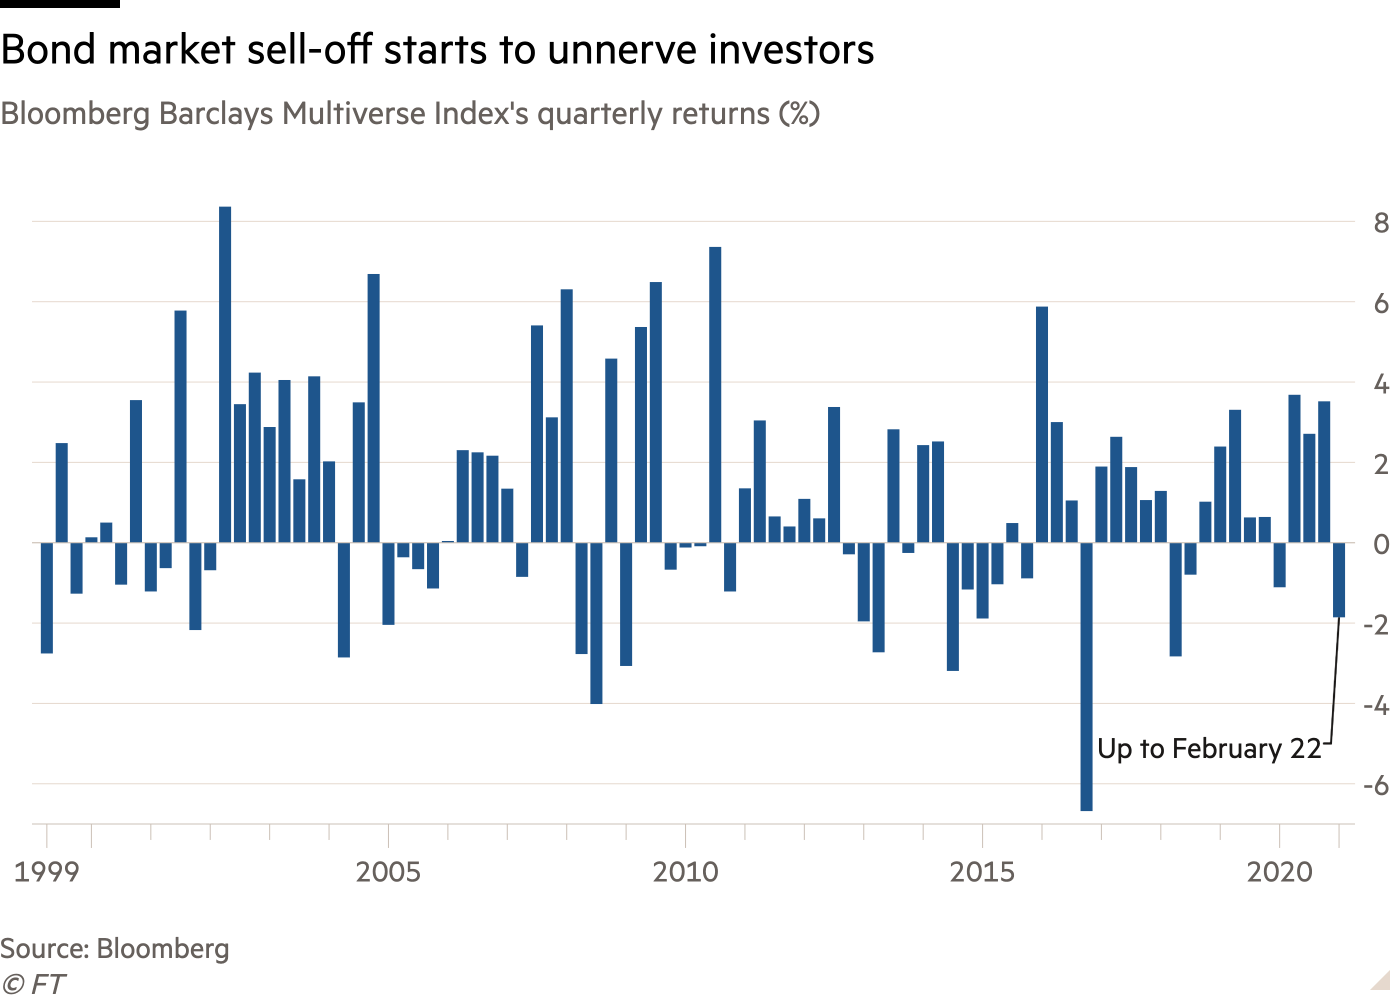 Lợi suất tăng vọt lên mức cao nhất trong nhiều năm, nhà đầu tư trái phiếu toàn cầu chao đảo trước những gói kích thích chưa từng có  - Ảnh 1.